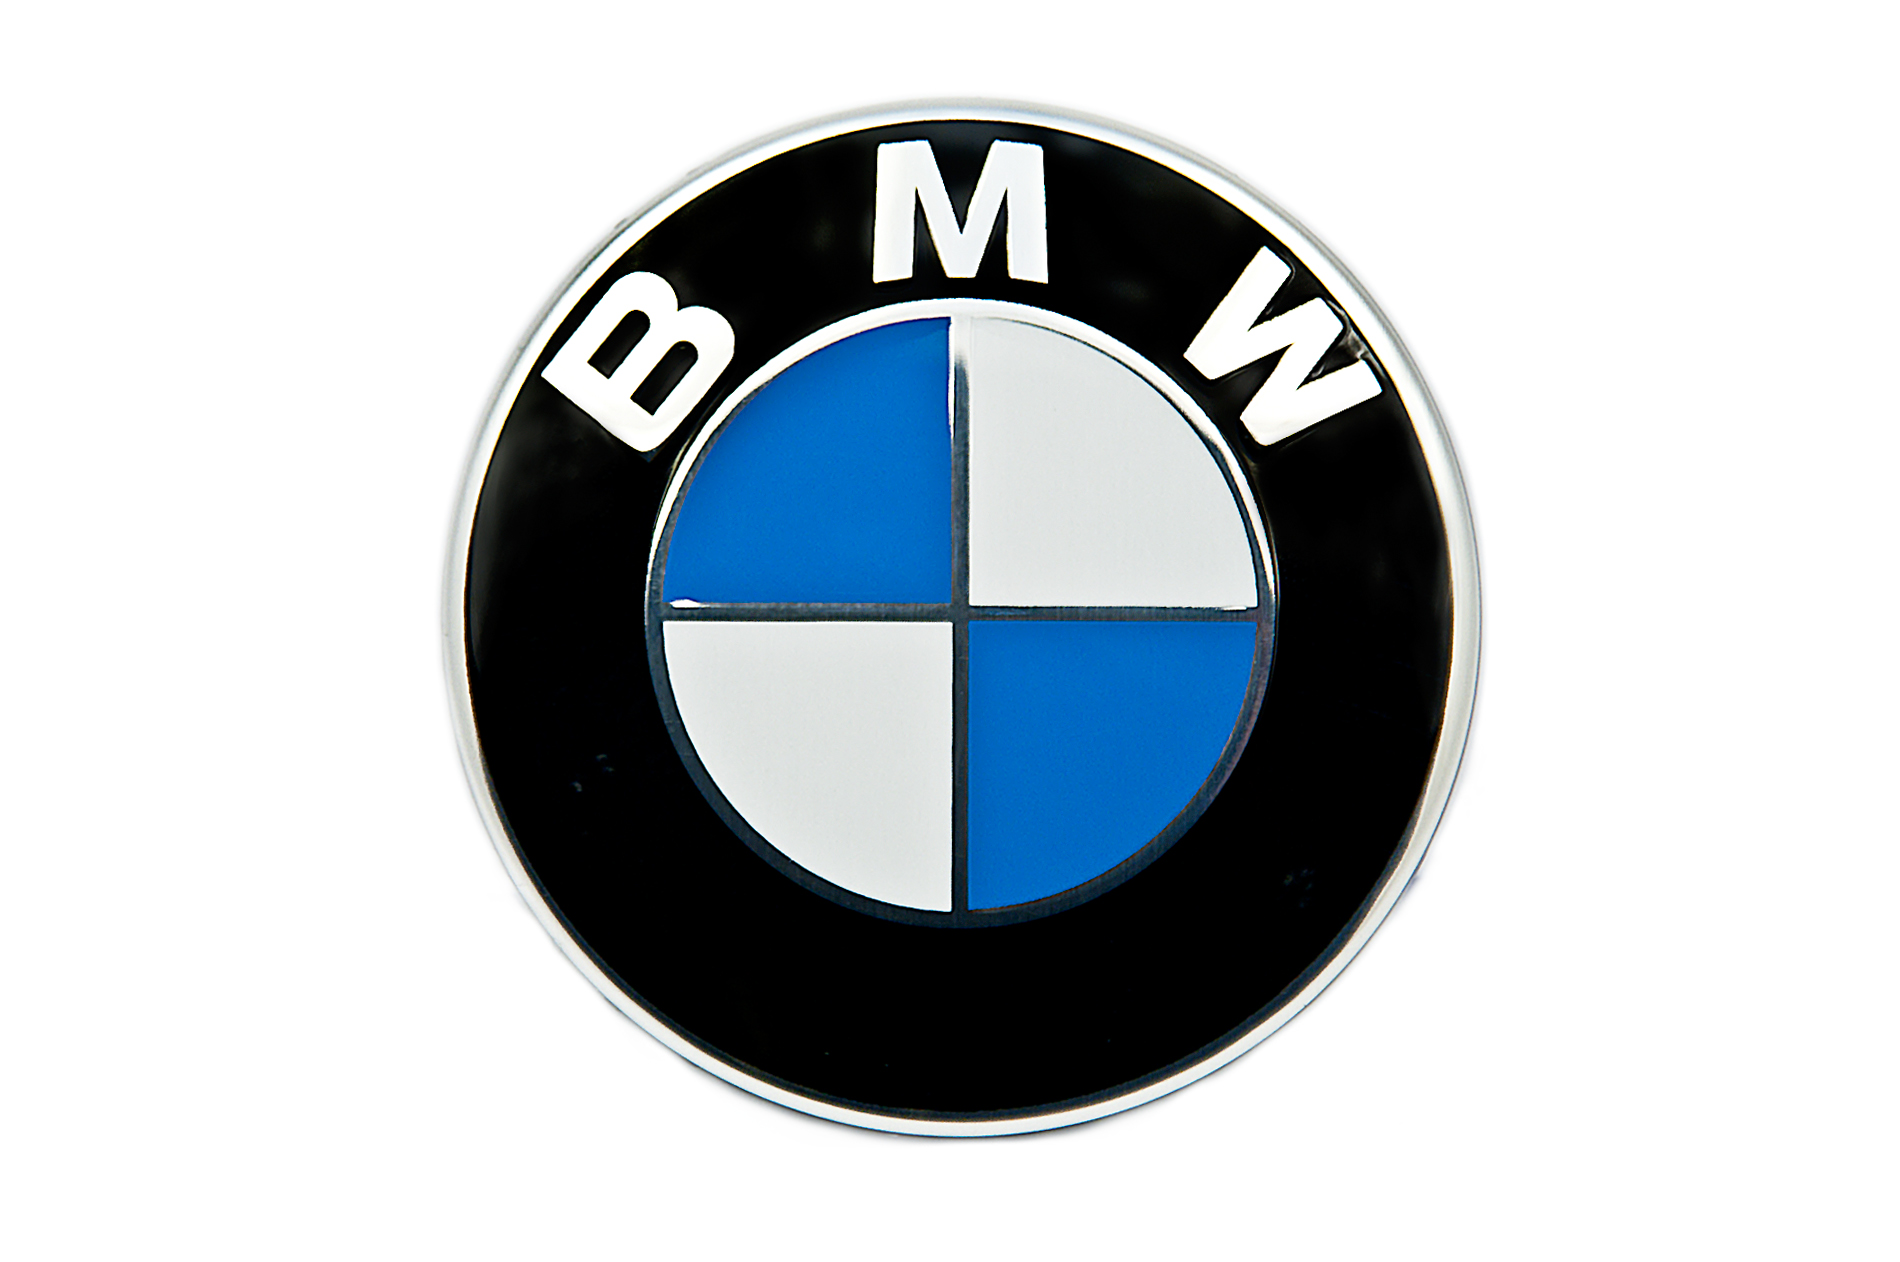 Πρόγραμμα ανάκλησης αυτοκινήτων BMW ανακοίνωσε η Γενική Γραμματεία Βιομηχανίας